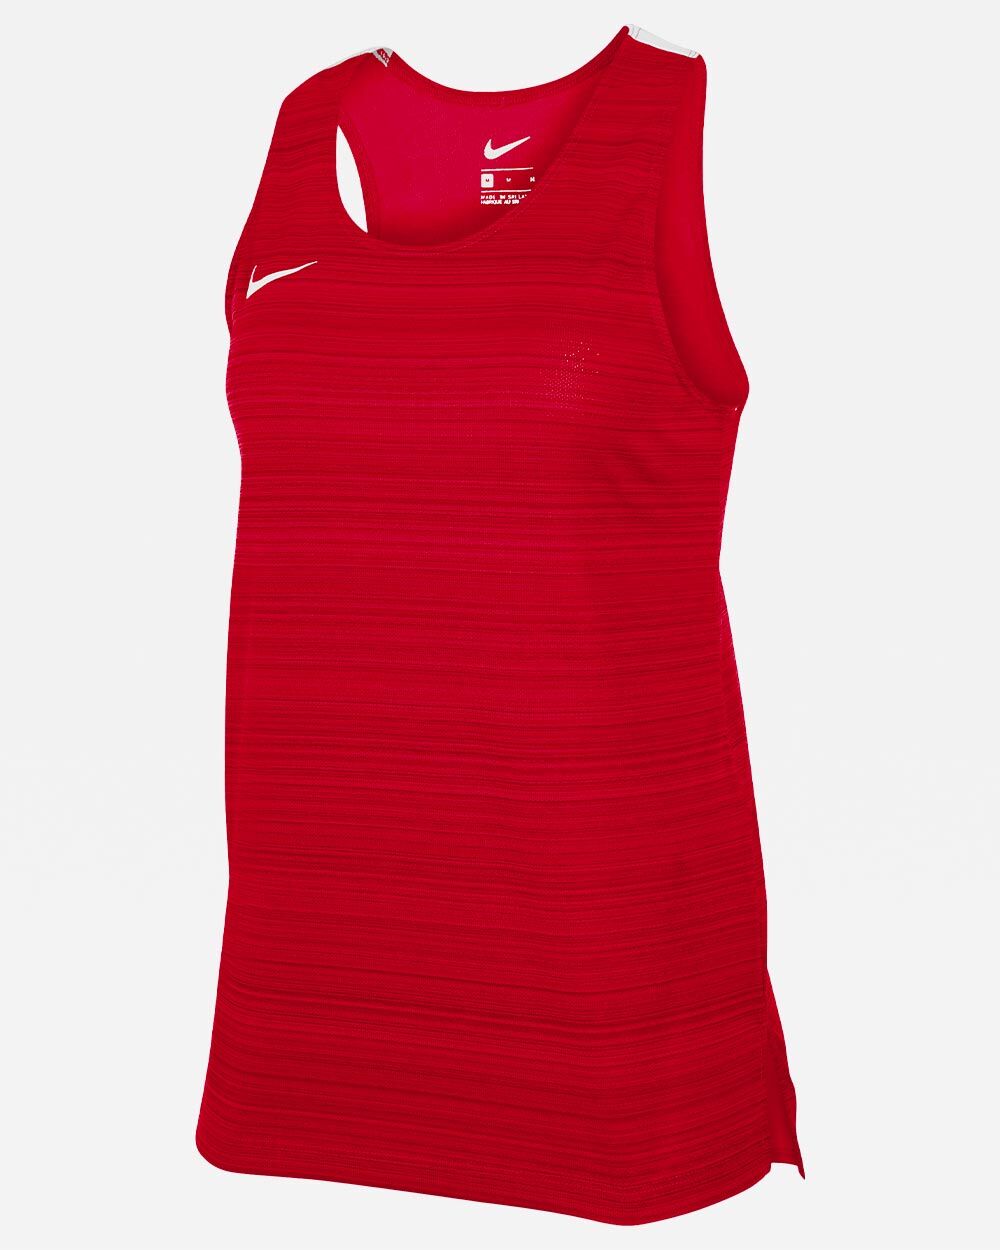 Camiseta sin mangas de running Nike Stock Rojo para Mujeres - NT0301-657